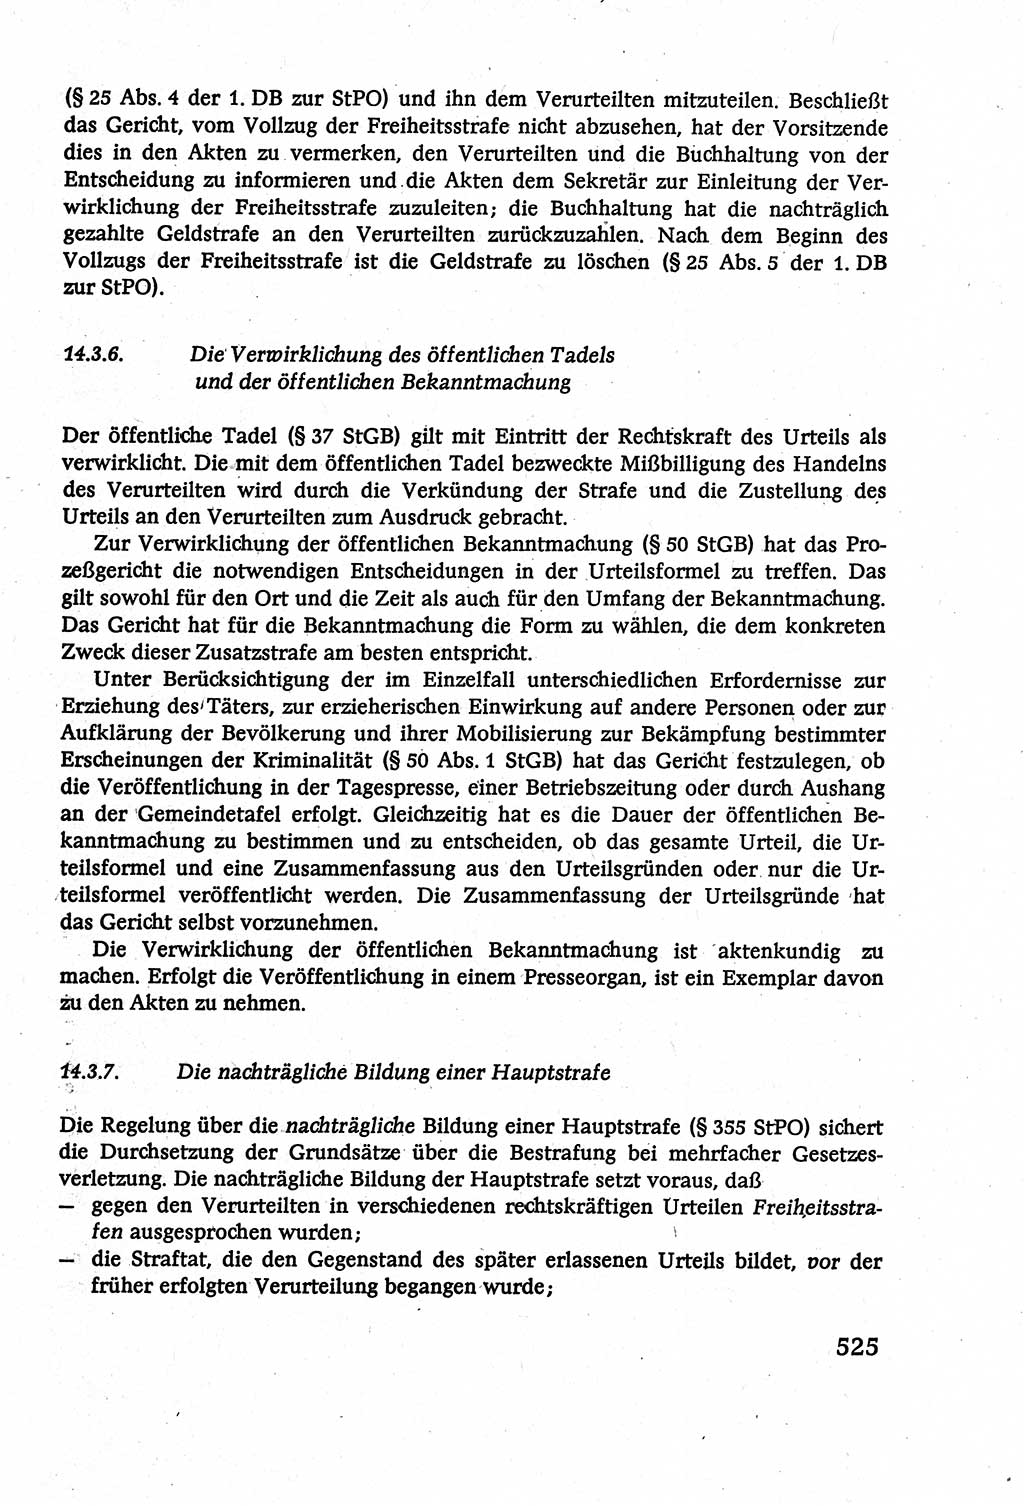 Strafverfahrensrecht [Deutsche Demokratische Republik (DDR)], Lehrbuch 1977, Seite 525 (Strafverf.-R. DDR Lb. 1977, S. 525)